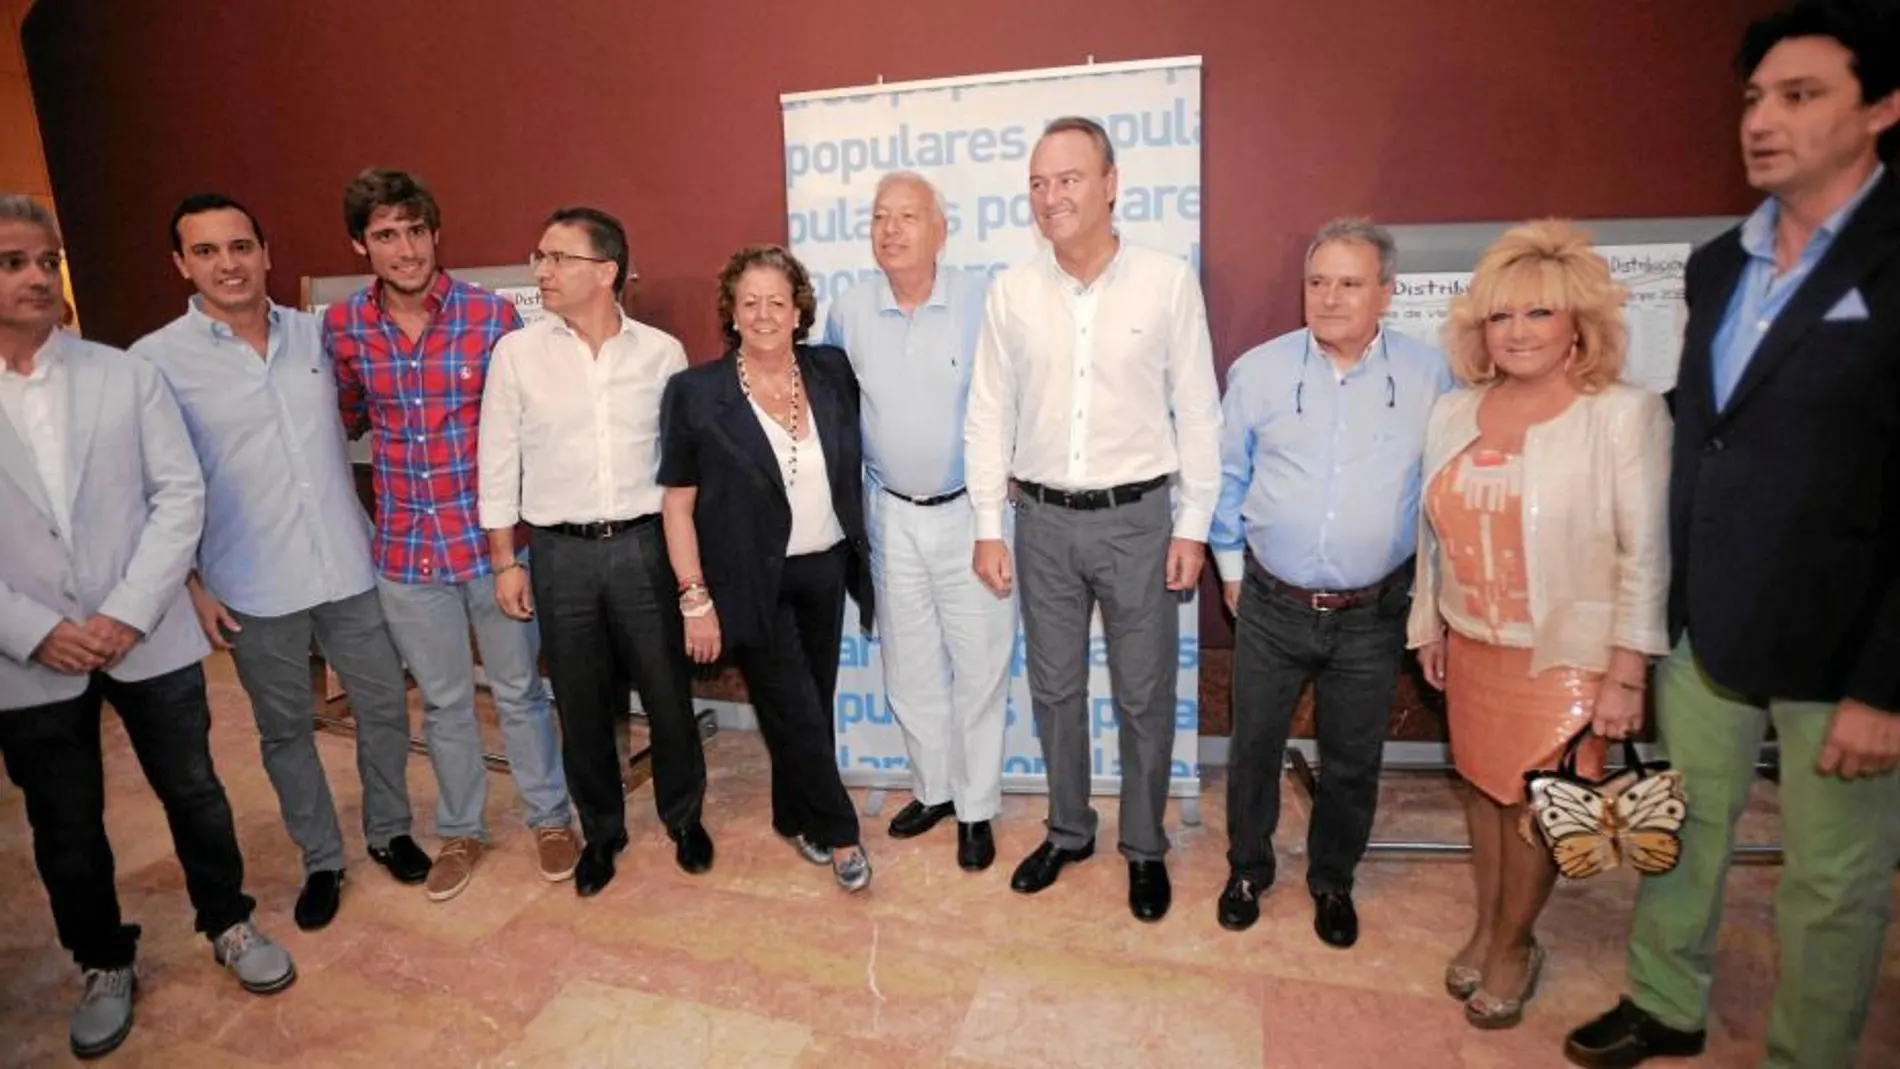 El PP se mostró unido ante la adversidad. Los protagonistas, Fabra, Rus, González Pons y García Margallo